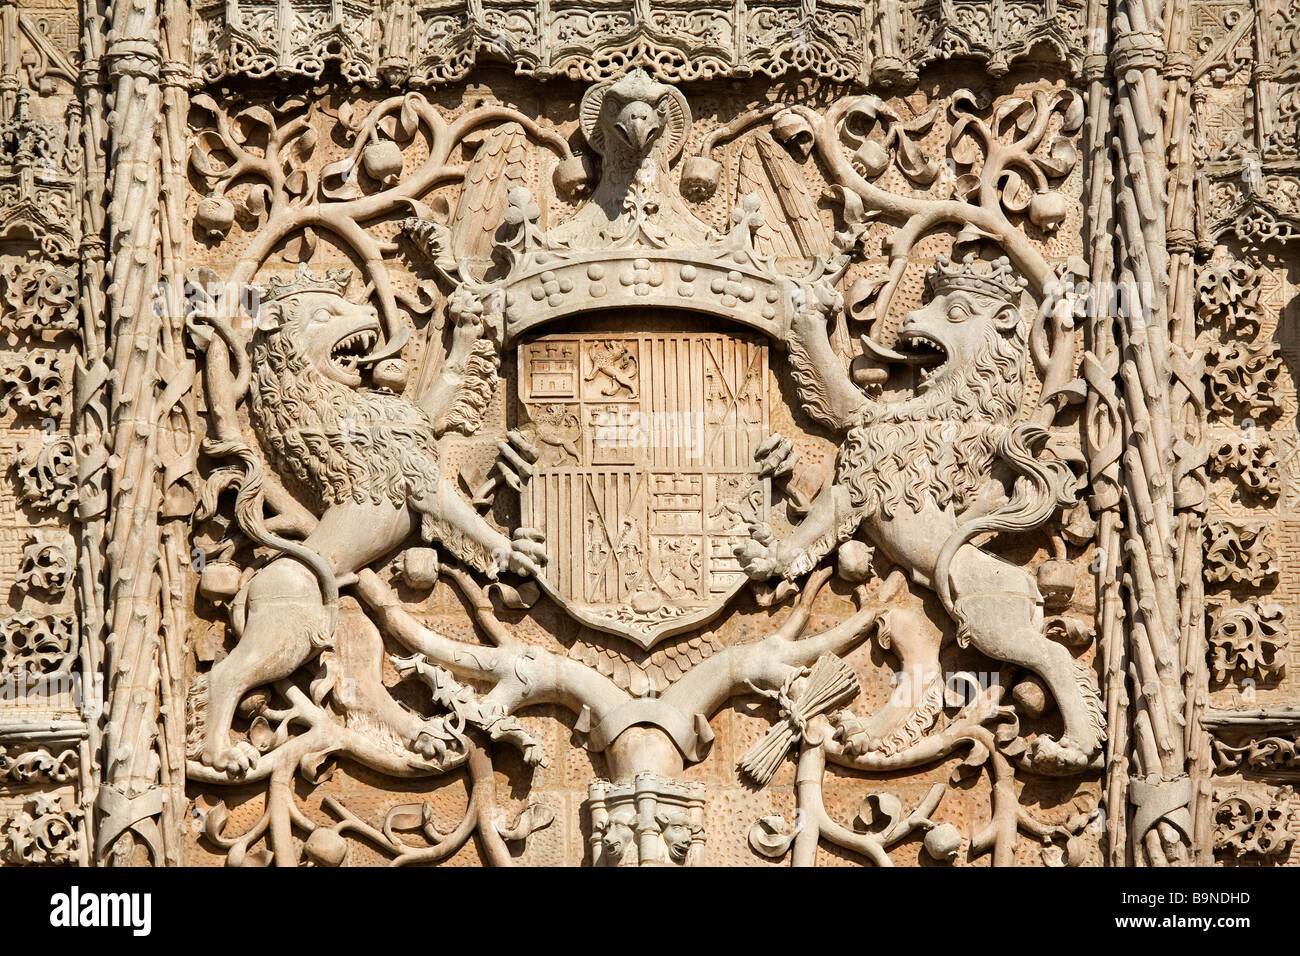 Facade of Colegio de San Gregorio Elizabethan Gothic Art Valladolid Castilla Leon Spain Stock Photo